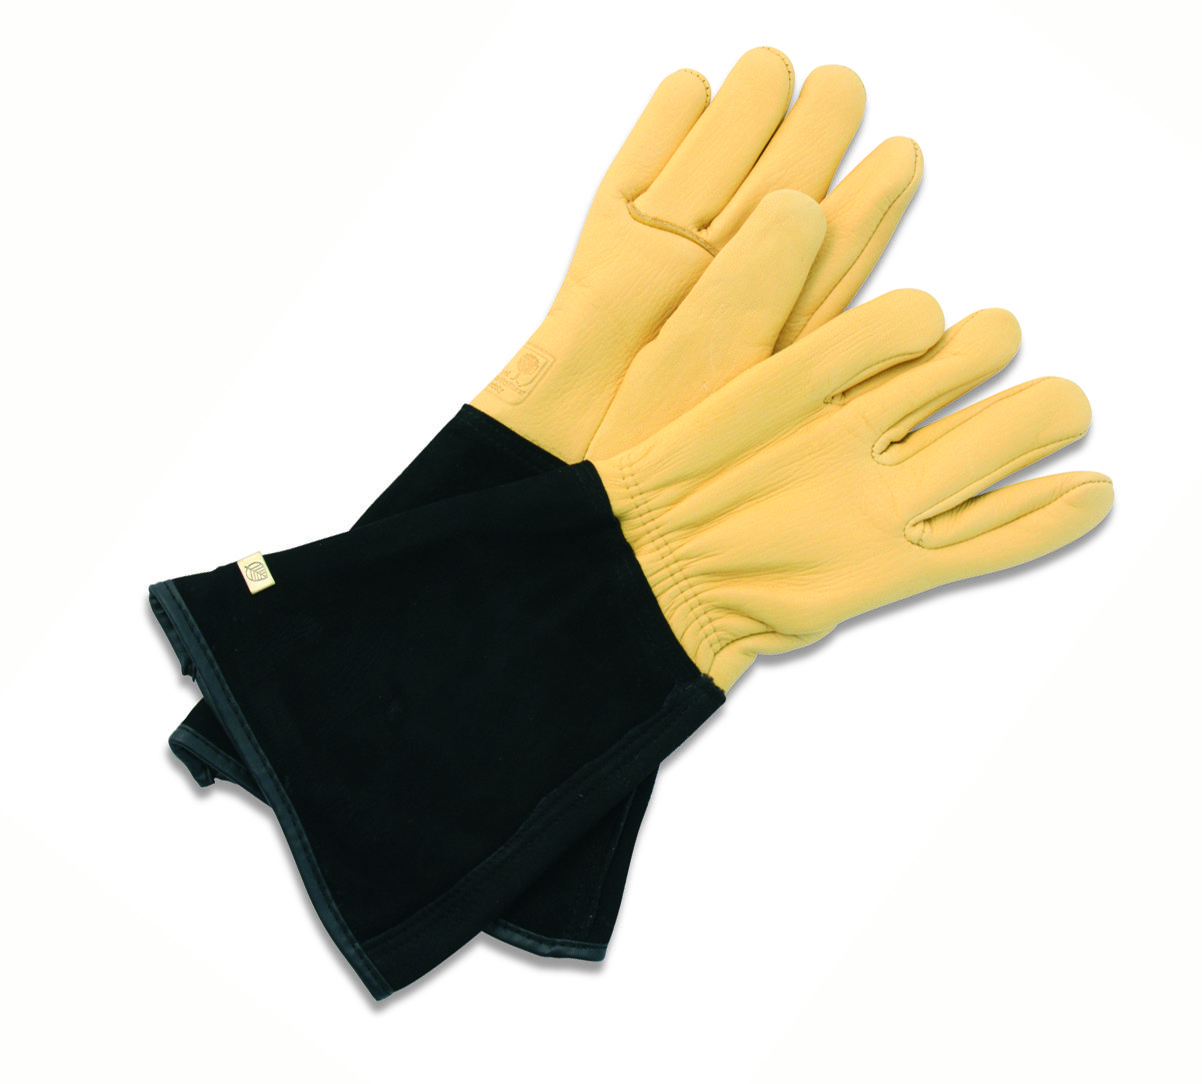 RHS Tough Tips Ladies Gardening Gloves Lavender Size Medium 